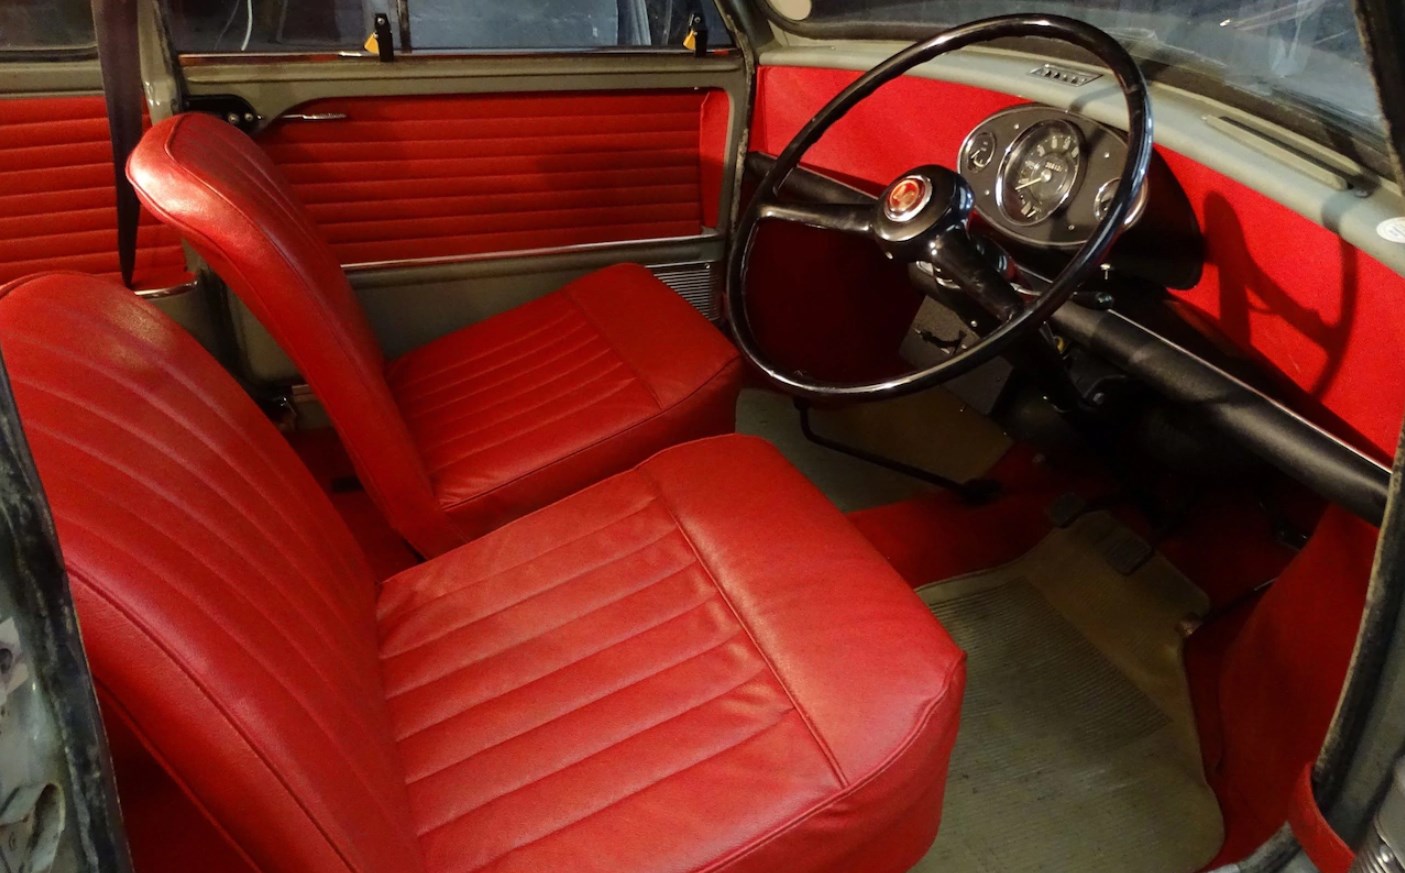 Red interior of Green classic Mini